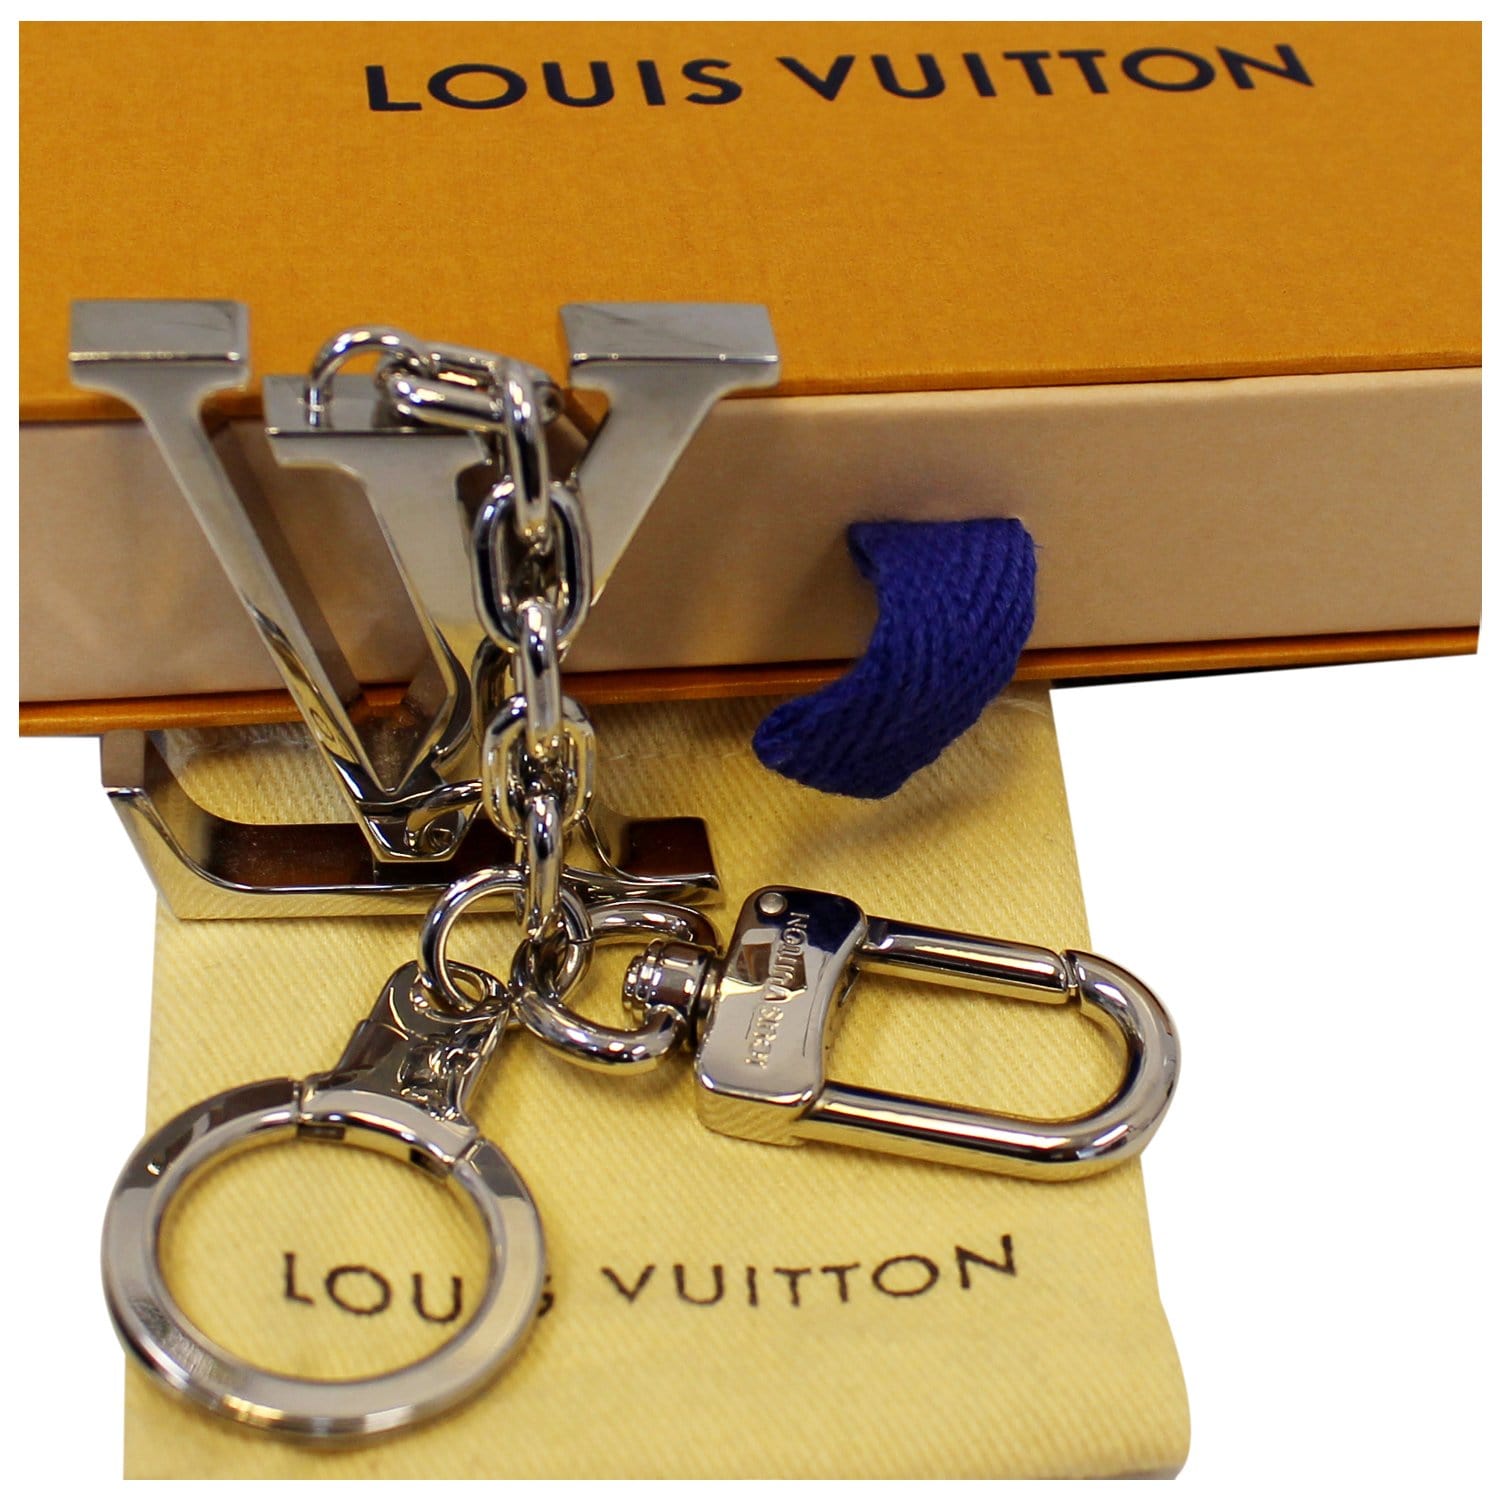 LOUIS VUITTON LV Facettes Bag Charm Key Holder Silver 920072